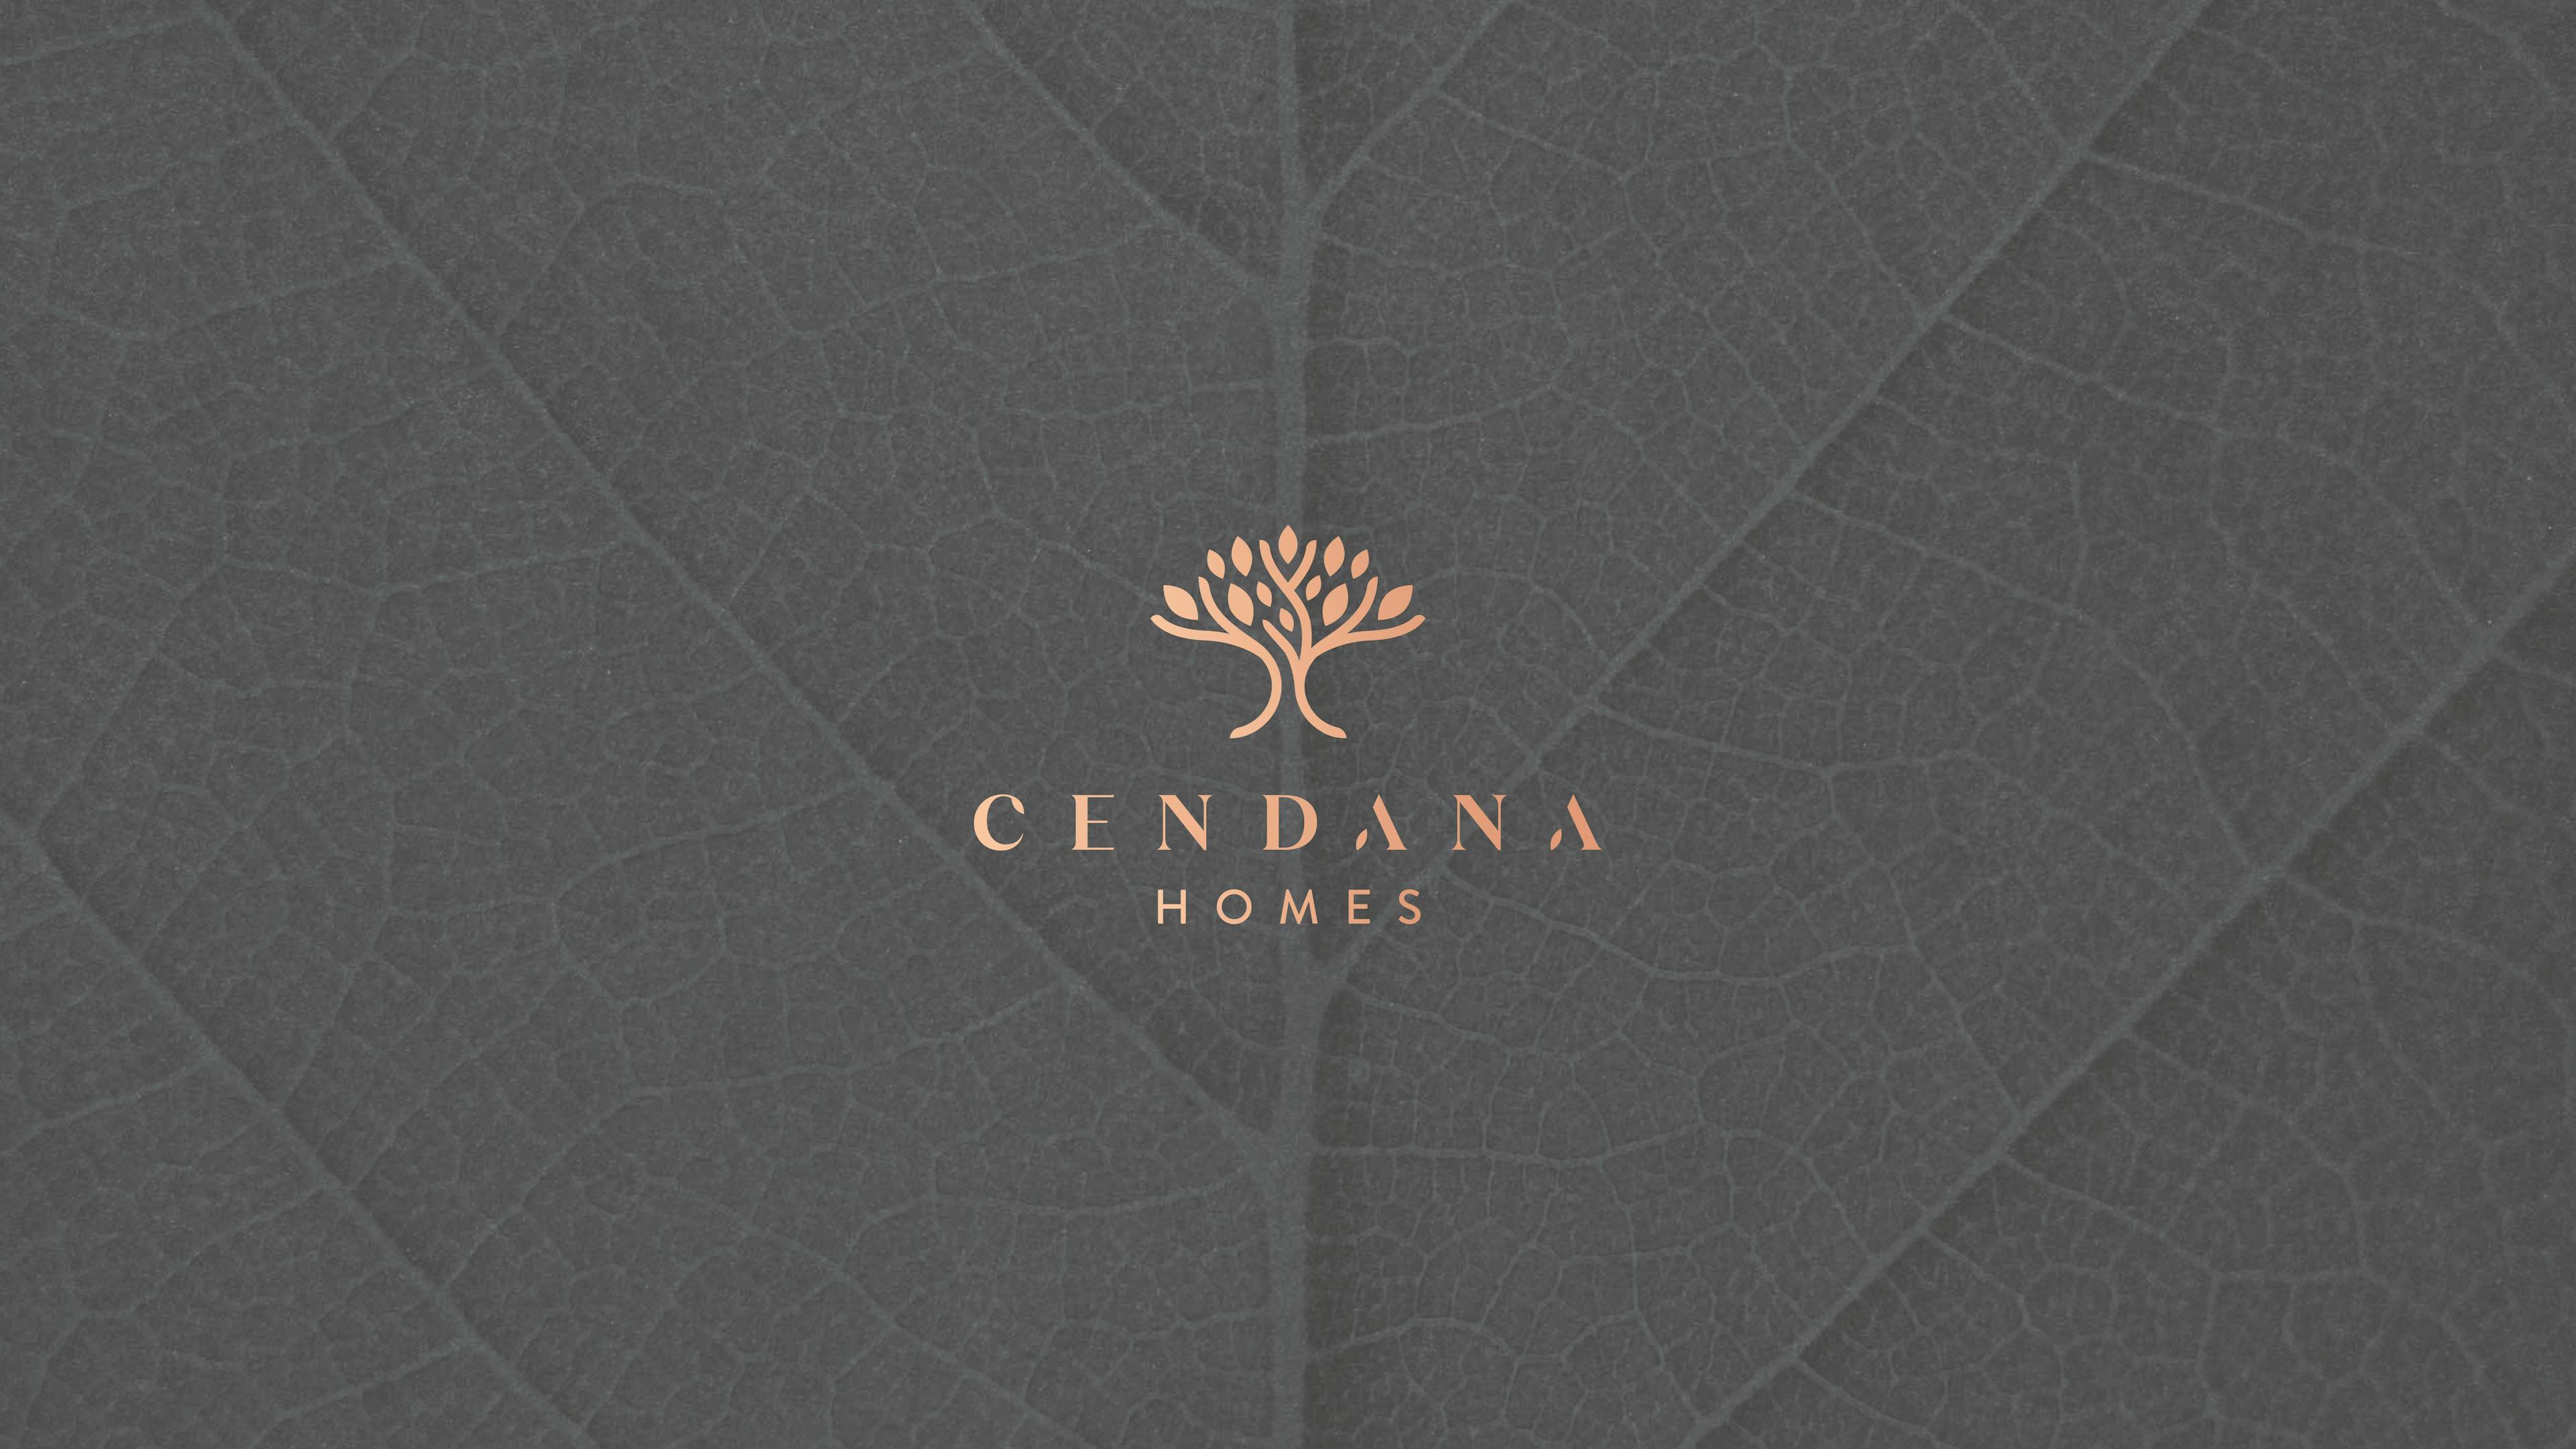 Cendana Homes by Lippo Group